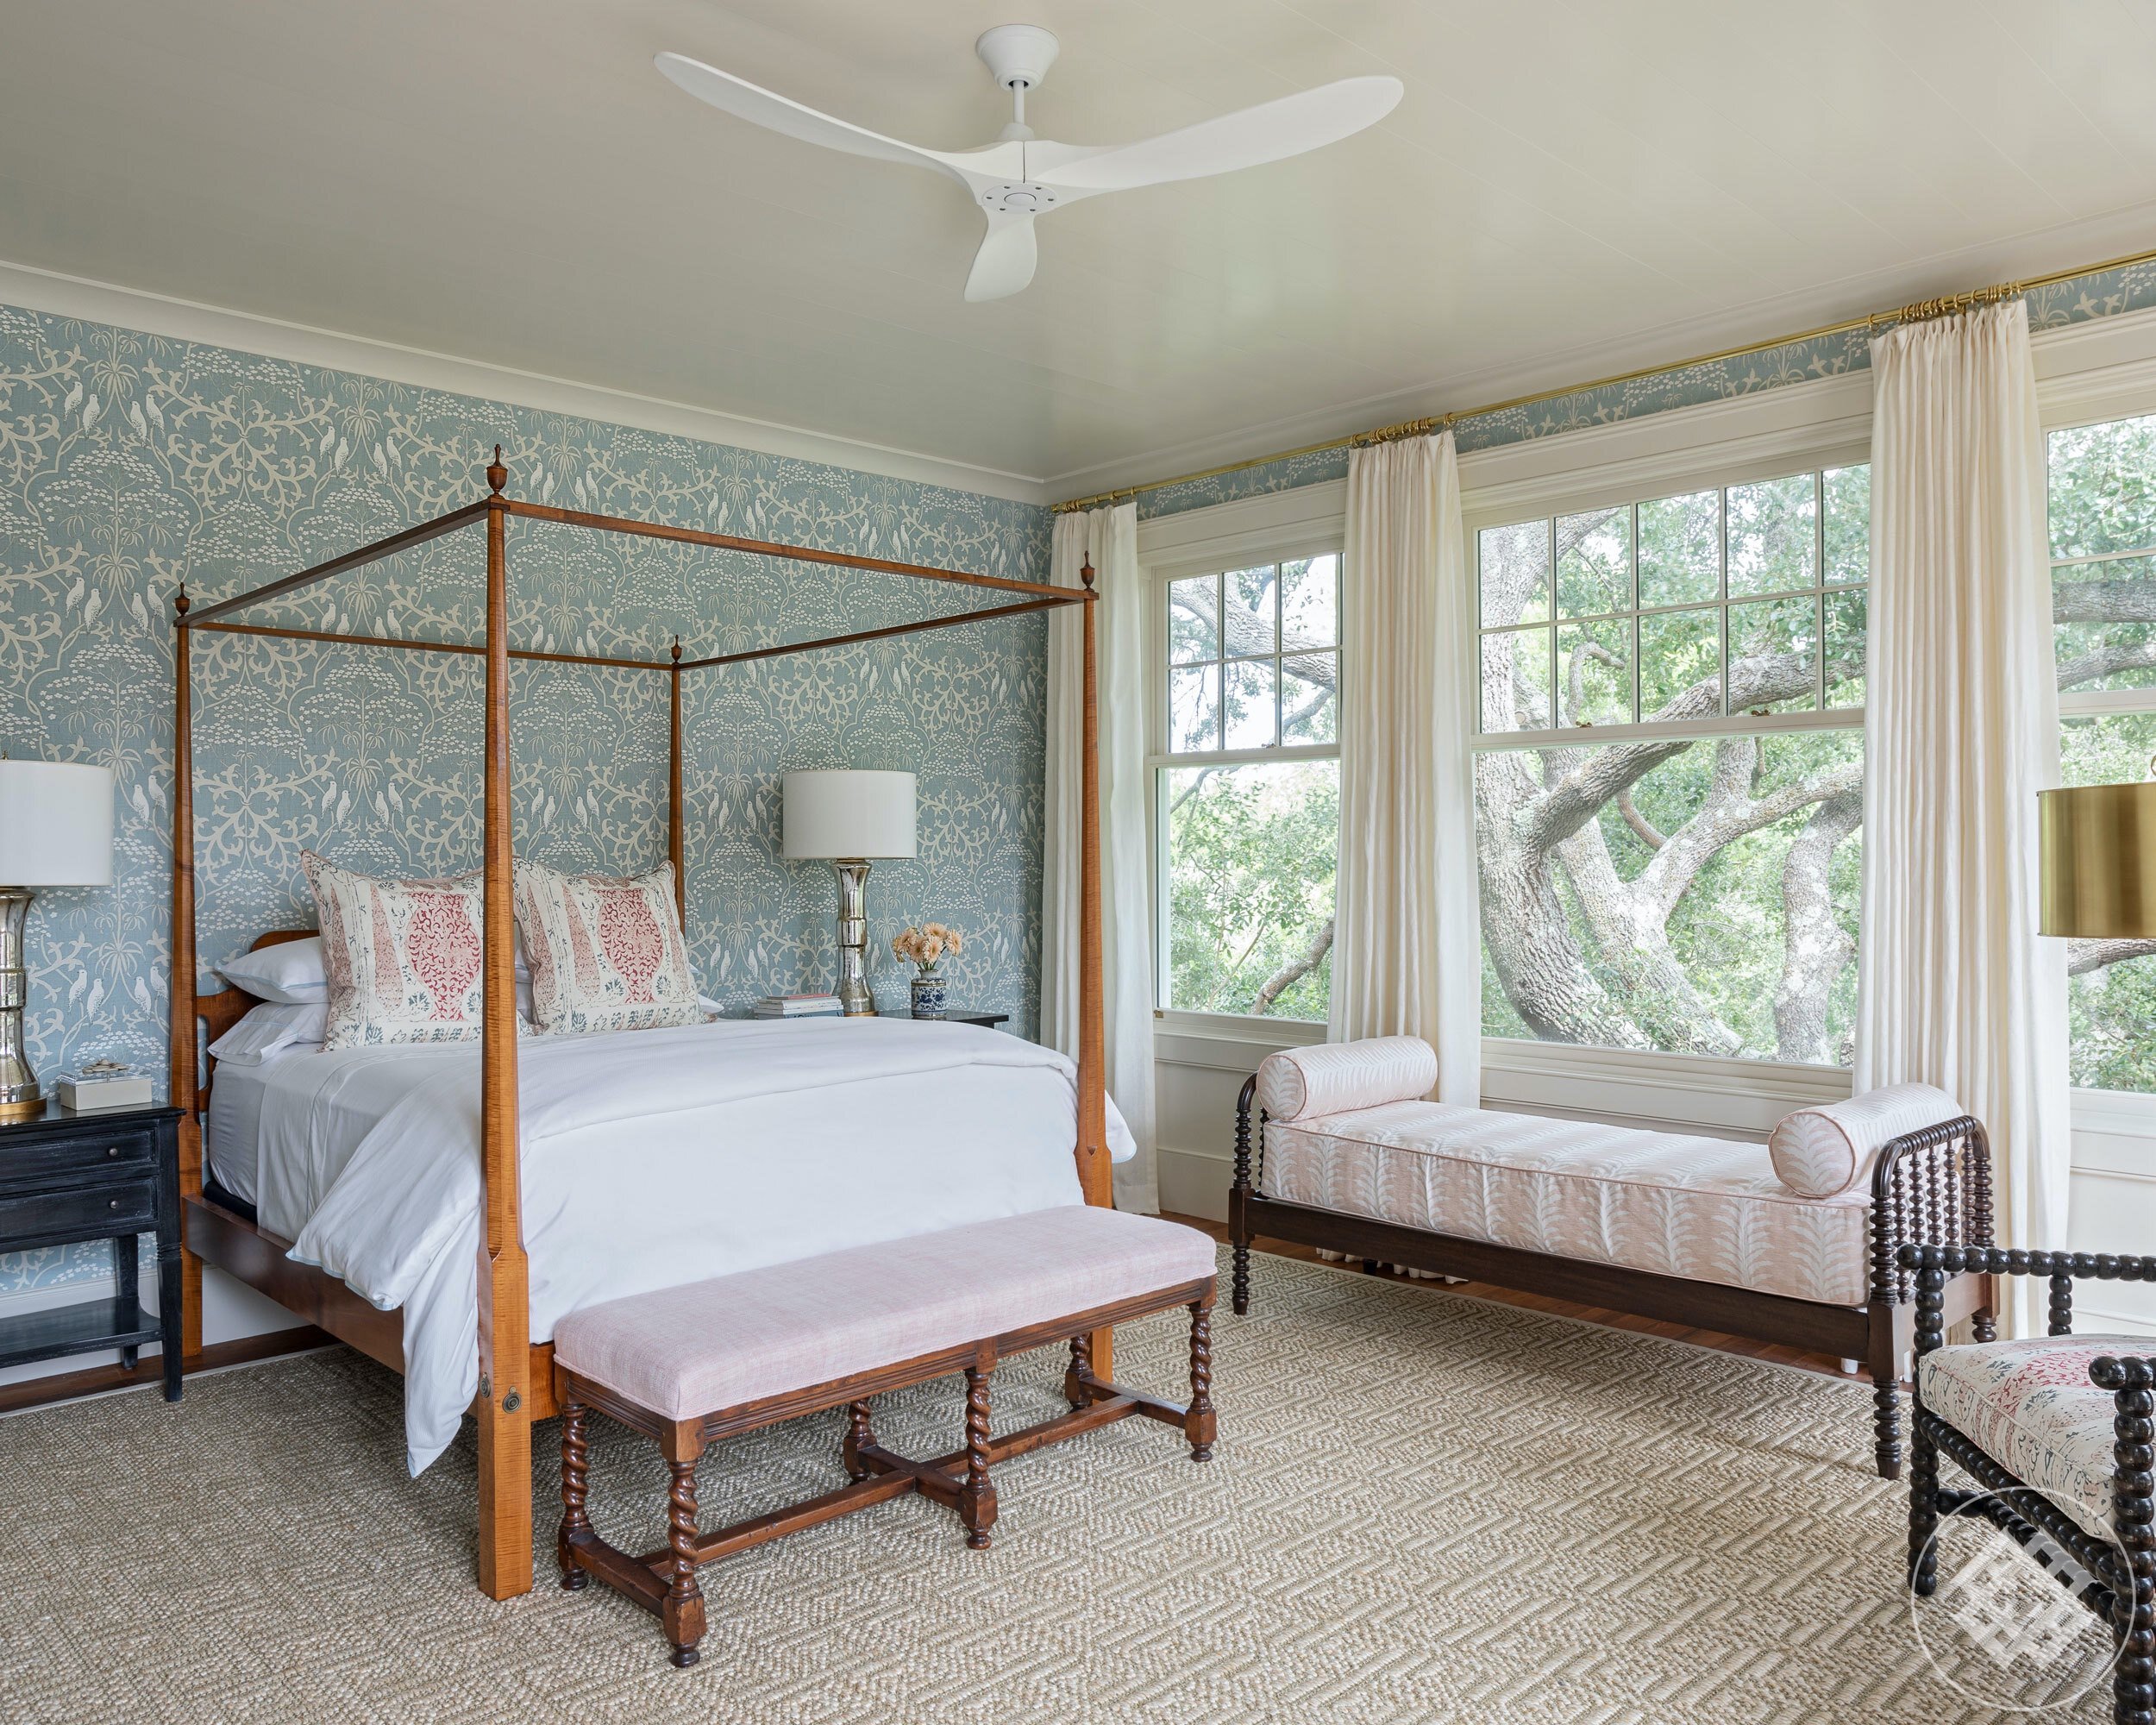 bcb-master-bedroom-with-antique-poster-bed-fiberworks-sisal-rug-lewis-wood-floral-wallpaper.jpg